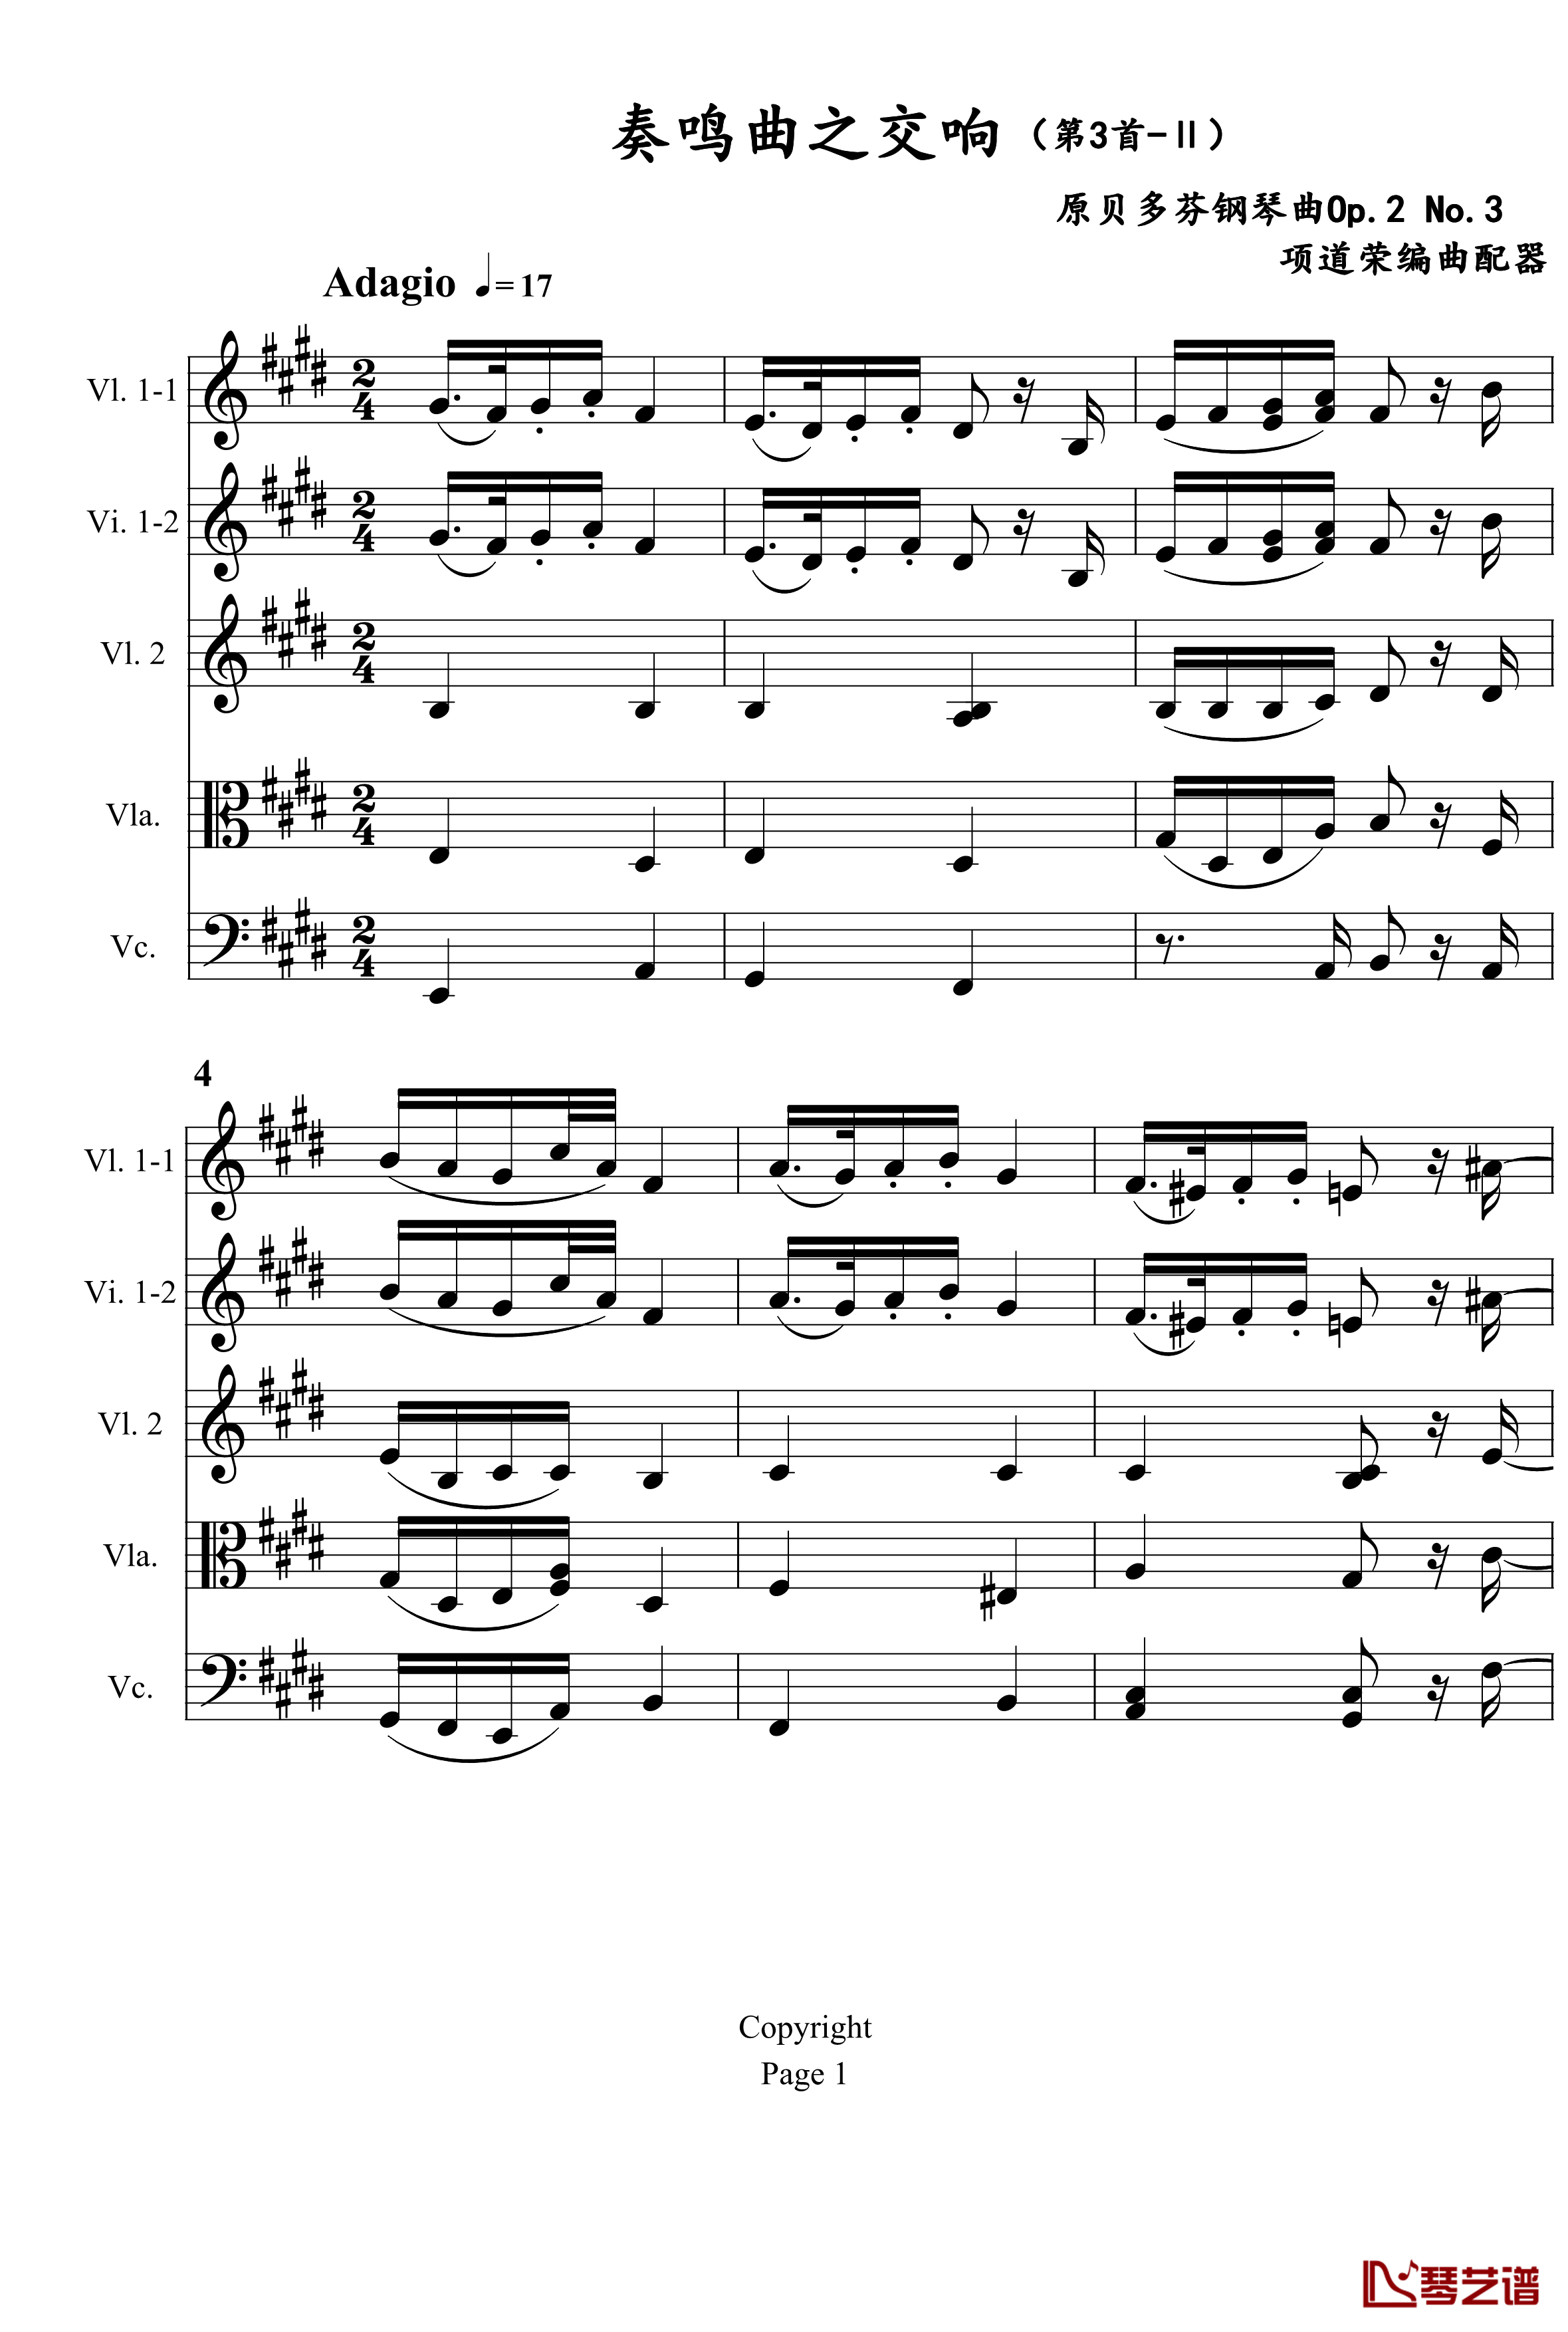 奏鸣曲之交响钢琴谱-第3首-Ⅱ-贝多芬-beethoven1